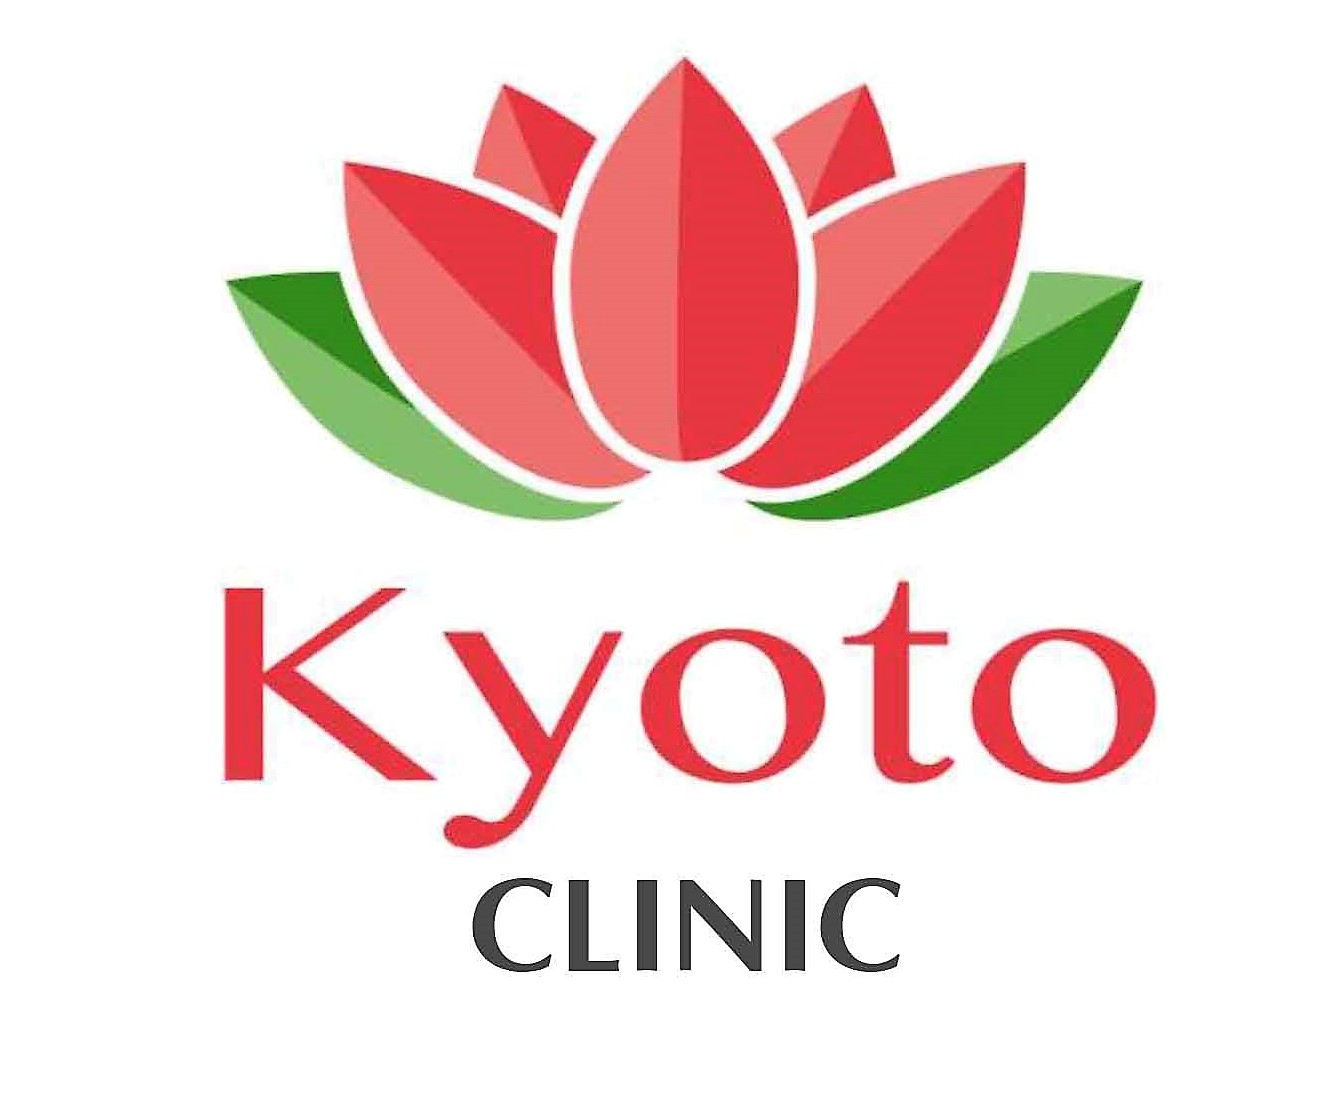 Kyoto Clinic